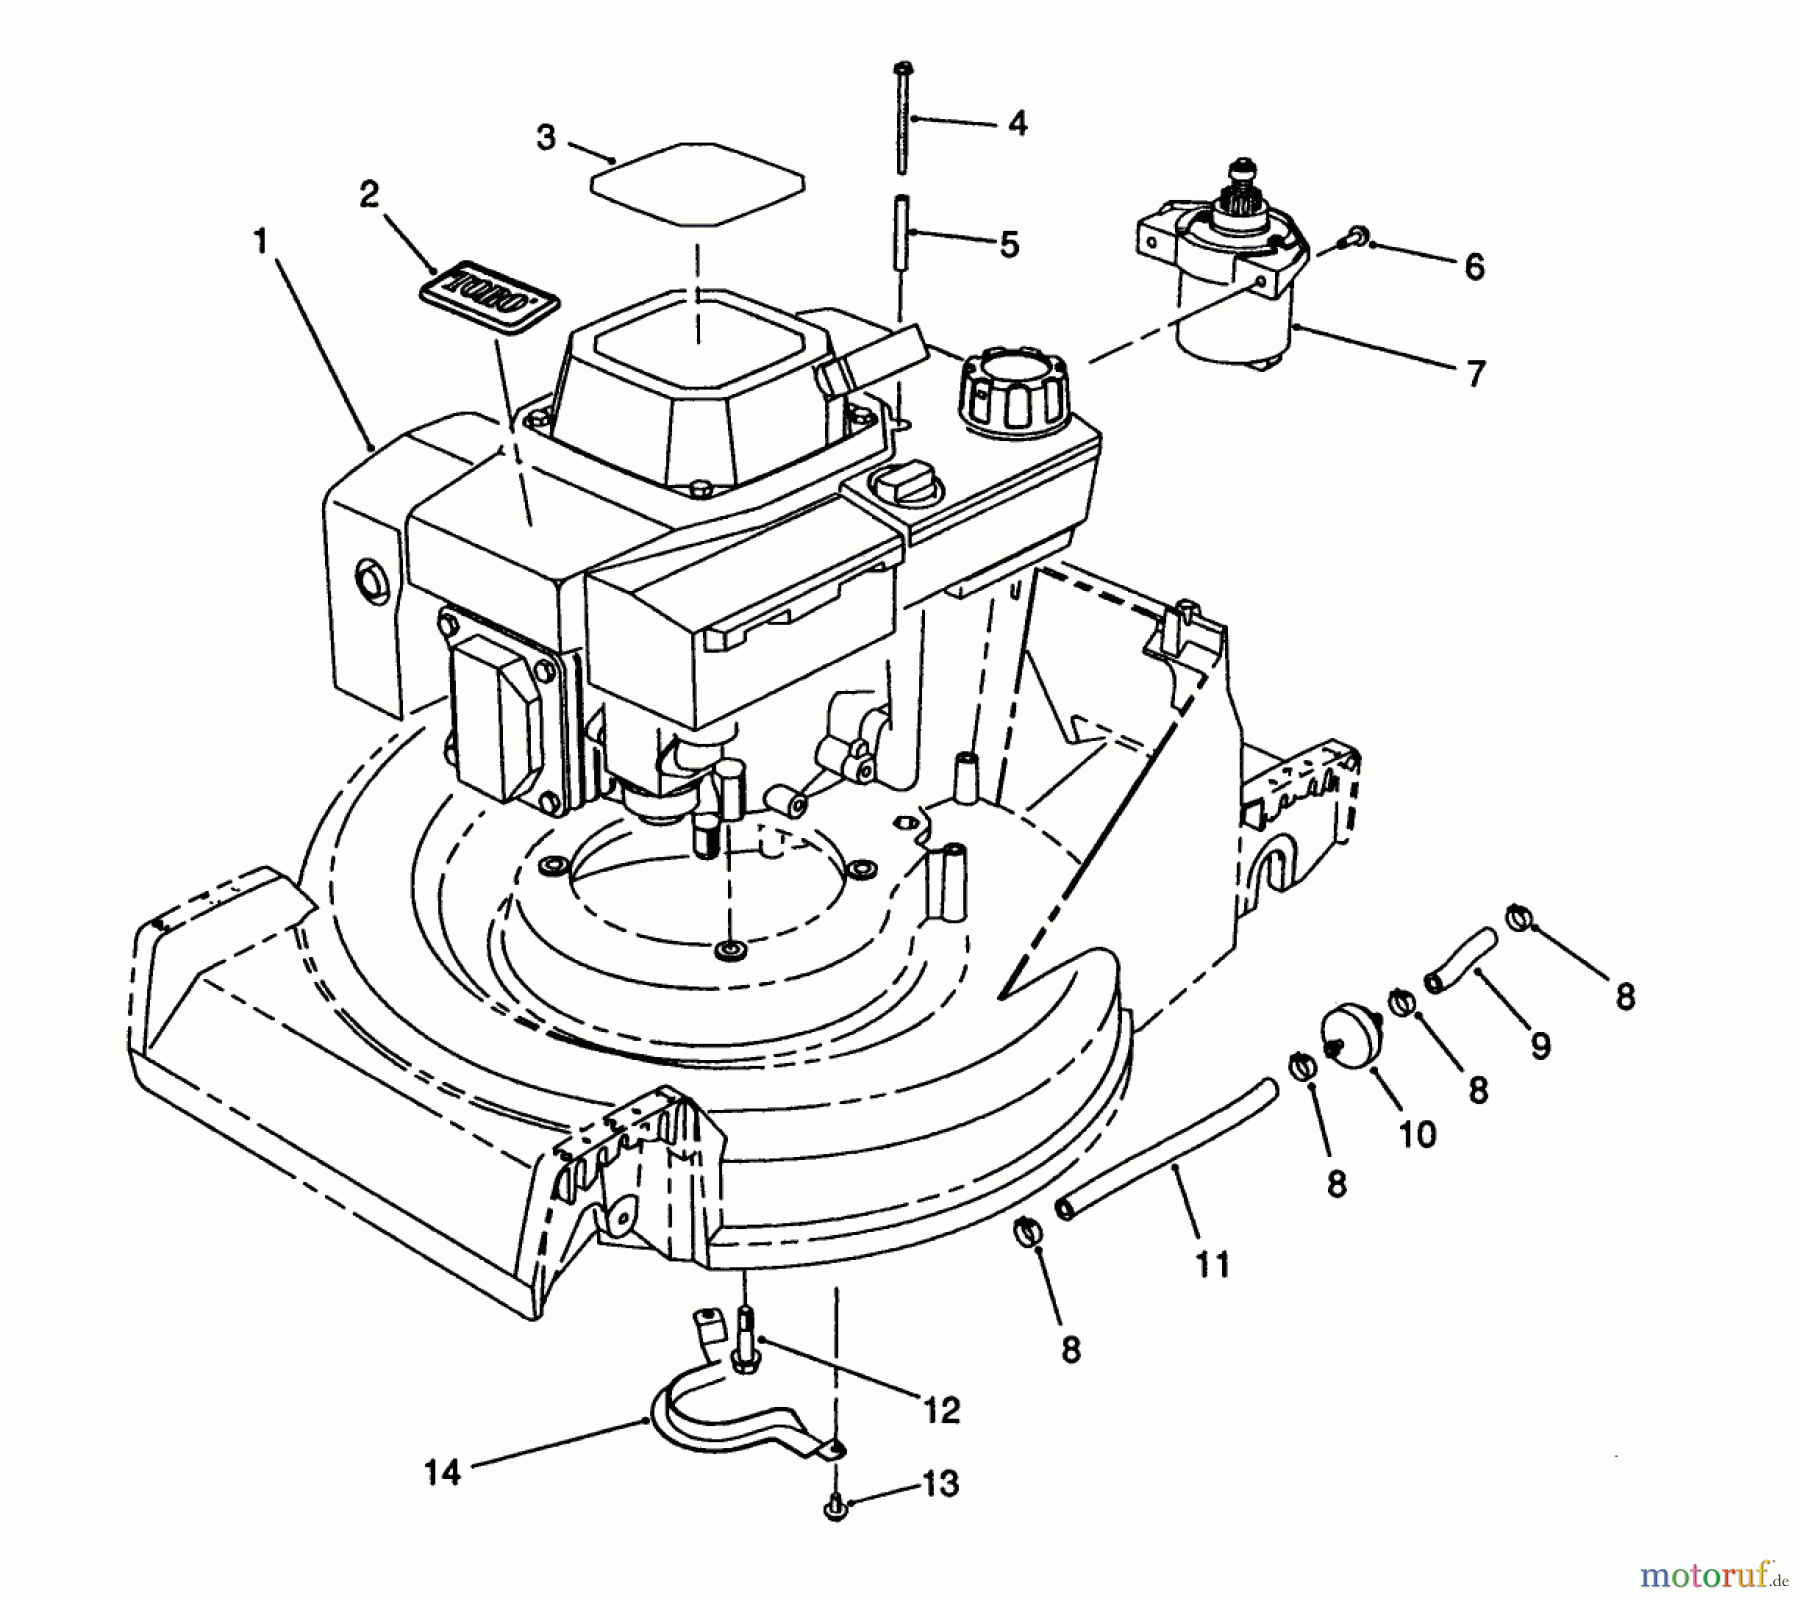  Toro Neu Mowers, Walk-Behind Seite 2 26624 - Toro Lawnmower, 1990 (0000001-0001101) ENGINE ASSEMBLY